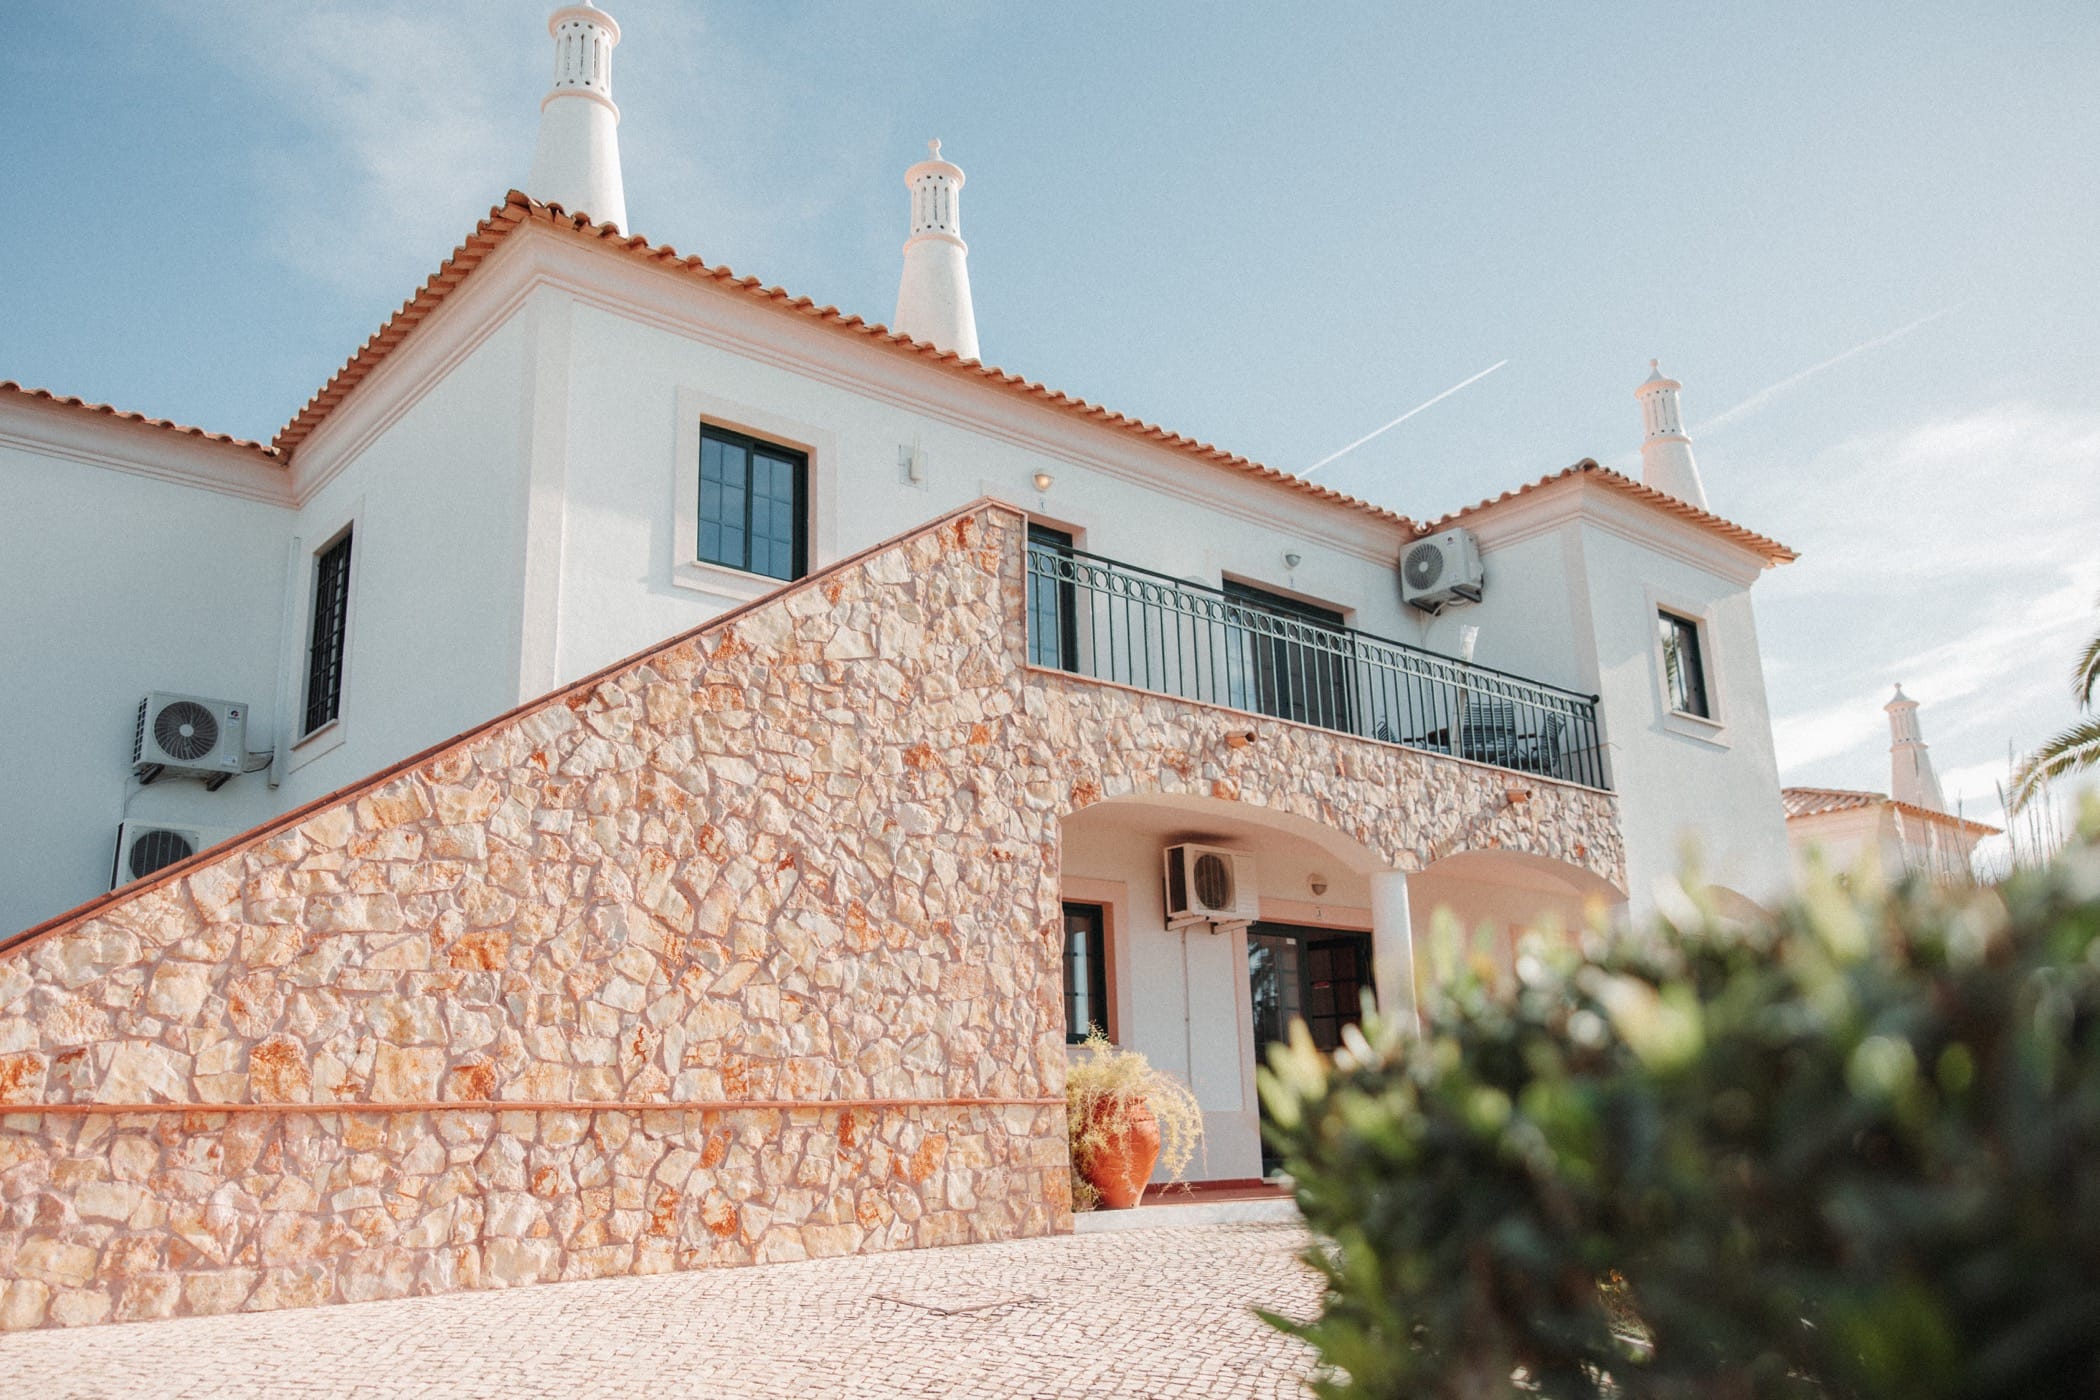 Explore the Beauty of Algarve at Casa Velha Apartments